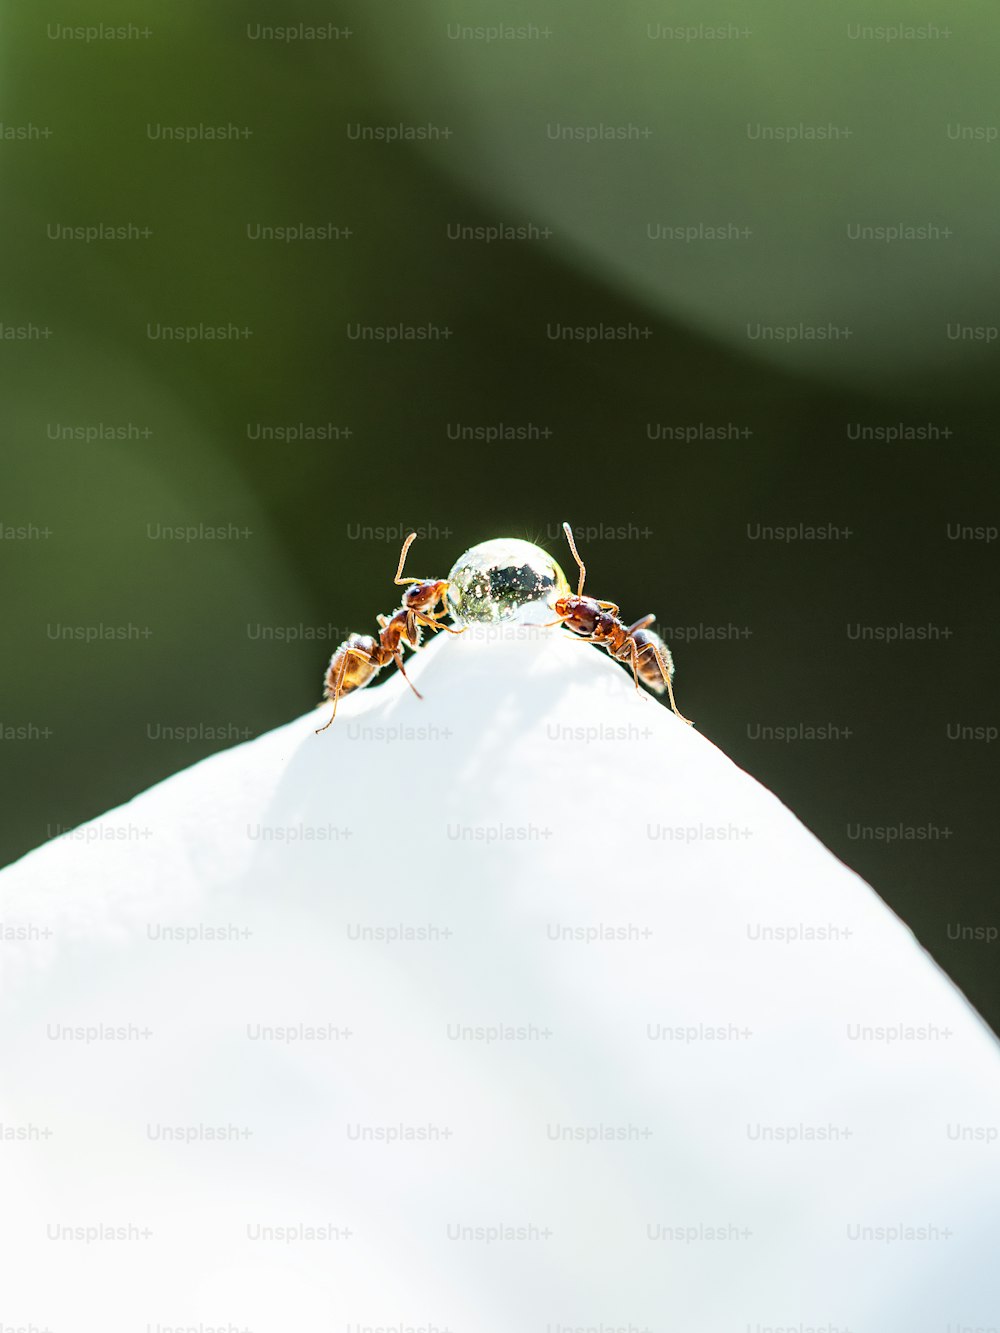 um close up de dois pequenos insetos em uma superfície branca